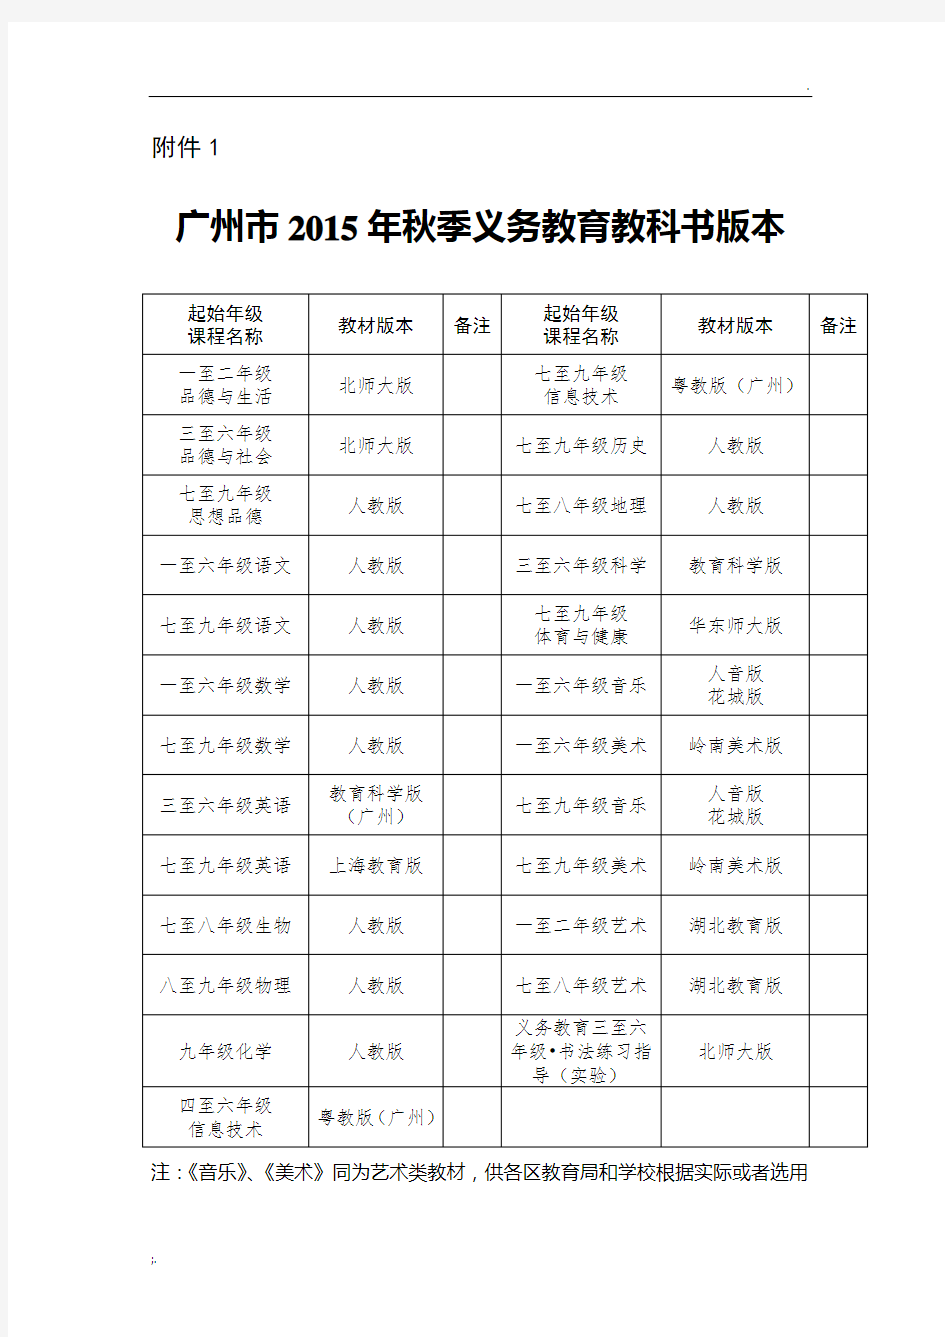 广州教材版本一览表